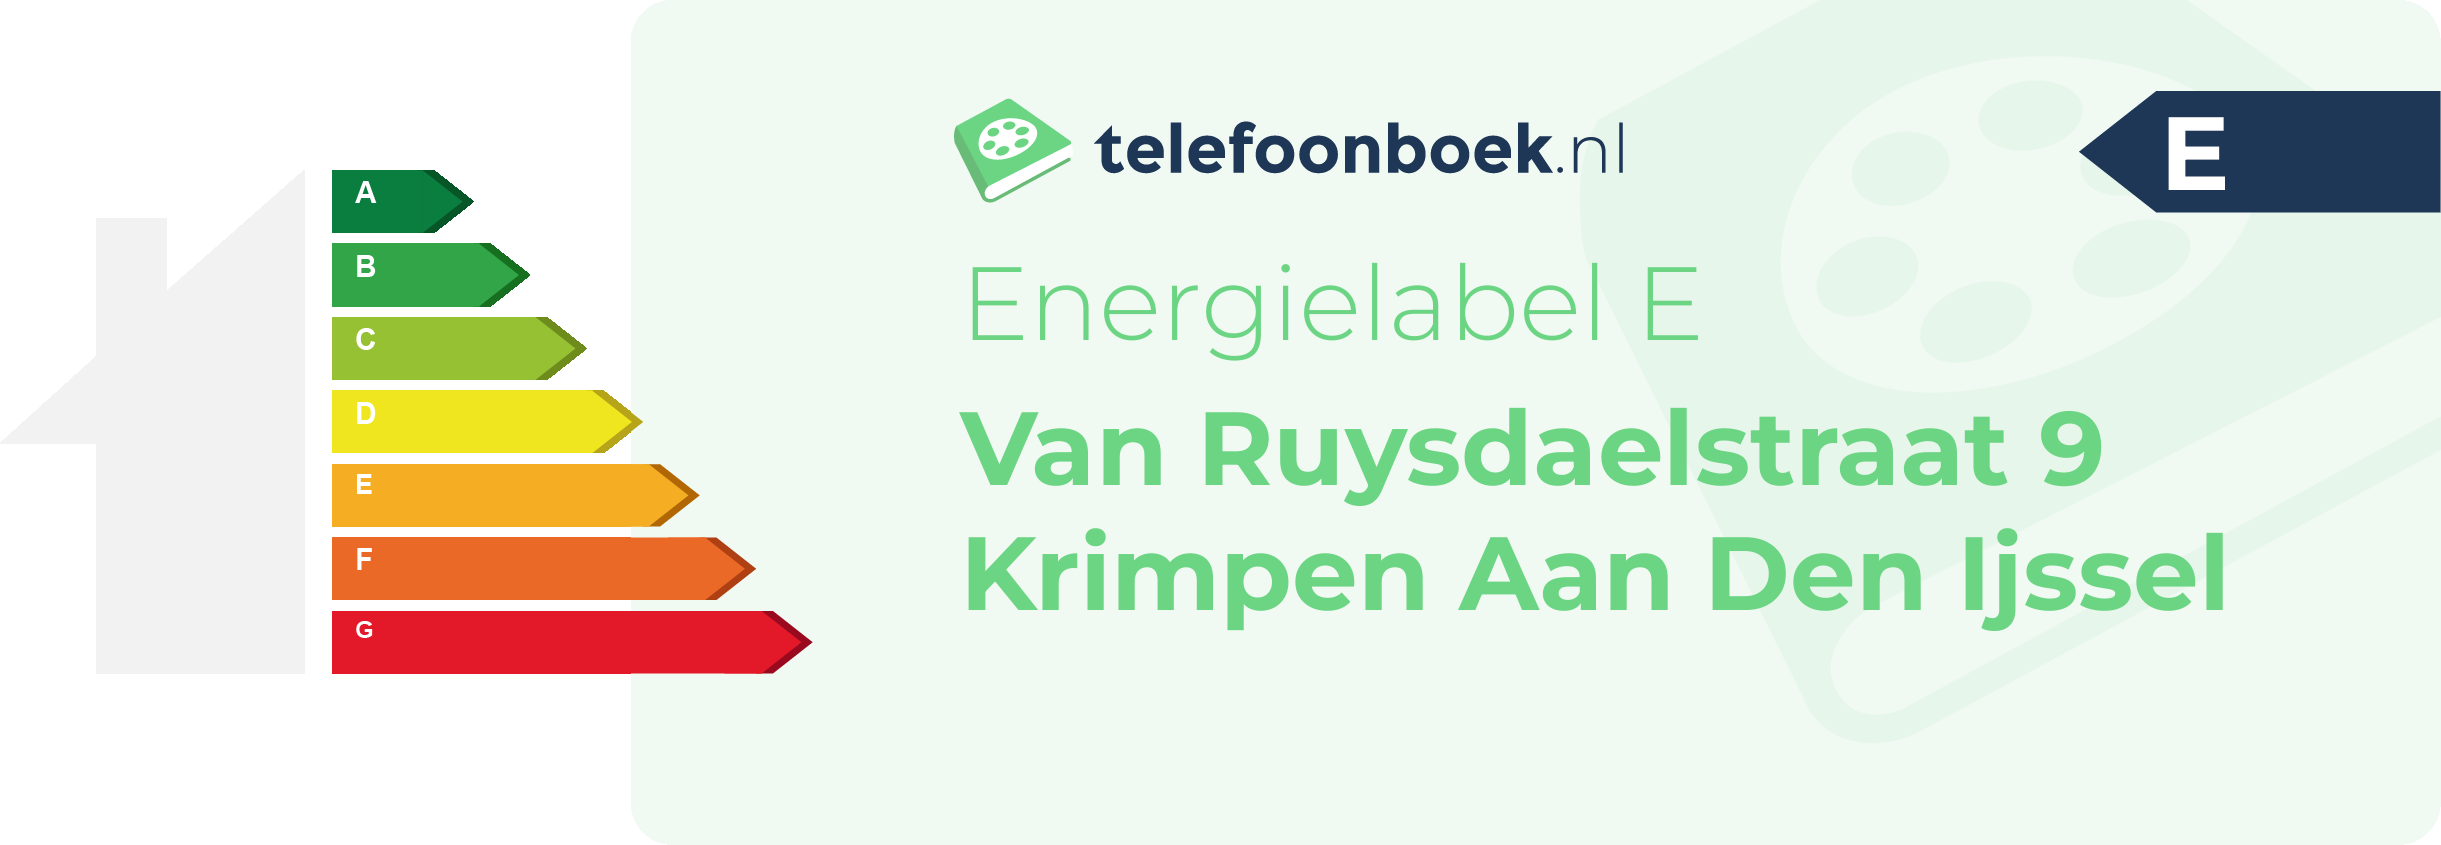 Energielabel Van Ruysdaelstraat 9 Krimpen Aan Den Ijssel